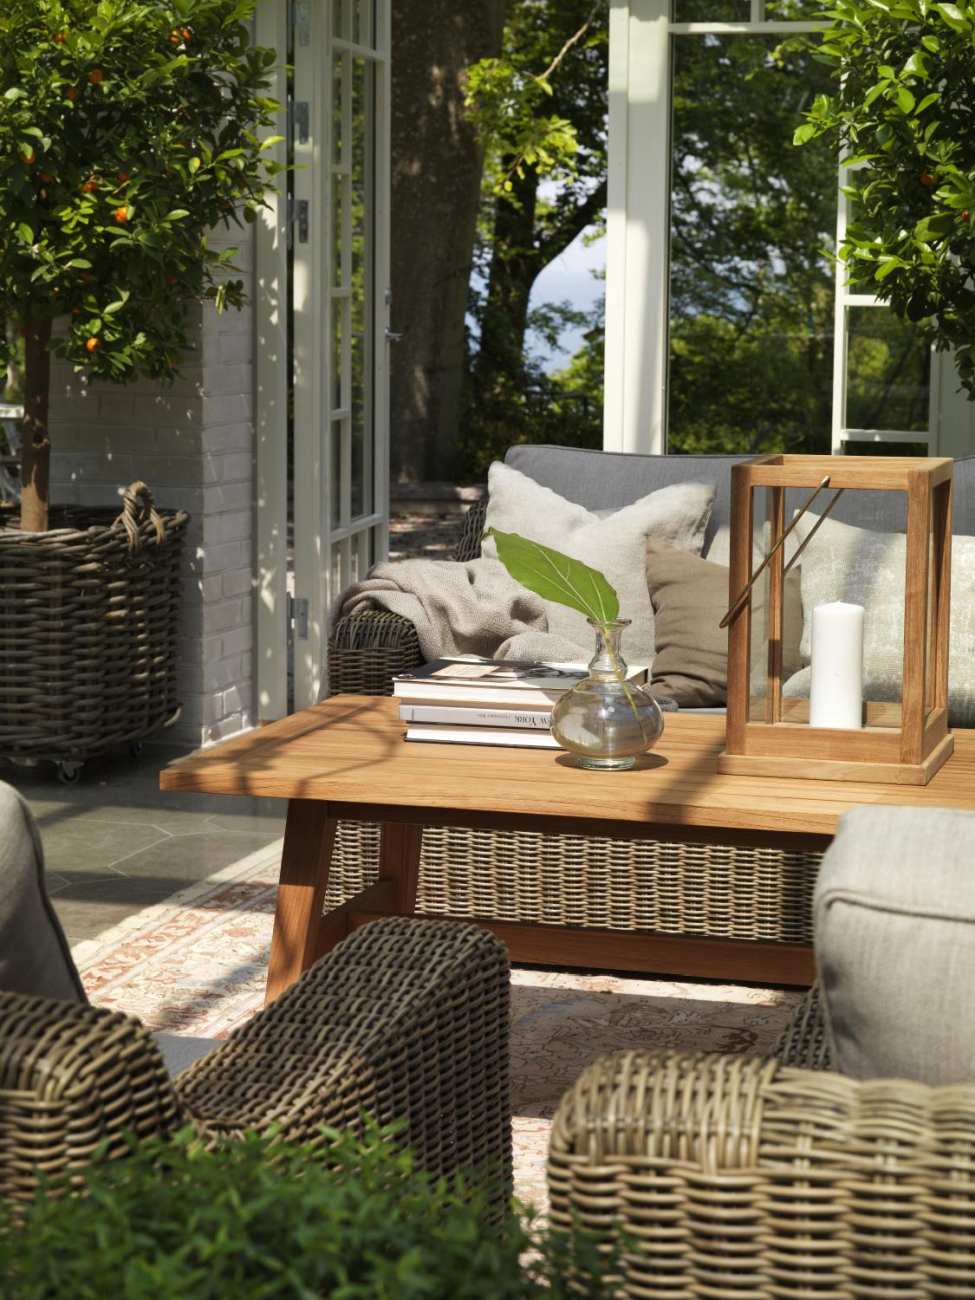 Das Gartensofa Glendon überzeugt mit seinem modernen Design. Gefertigt wurde er aus Rattan, welches einen braunen Farbton besitzt. Das Gestell ist auch aus Rattan und hat eine braune Farbe. Die Sitzhöhe des Sofas beträgt 42 cm.